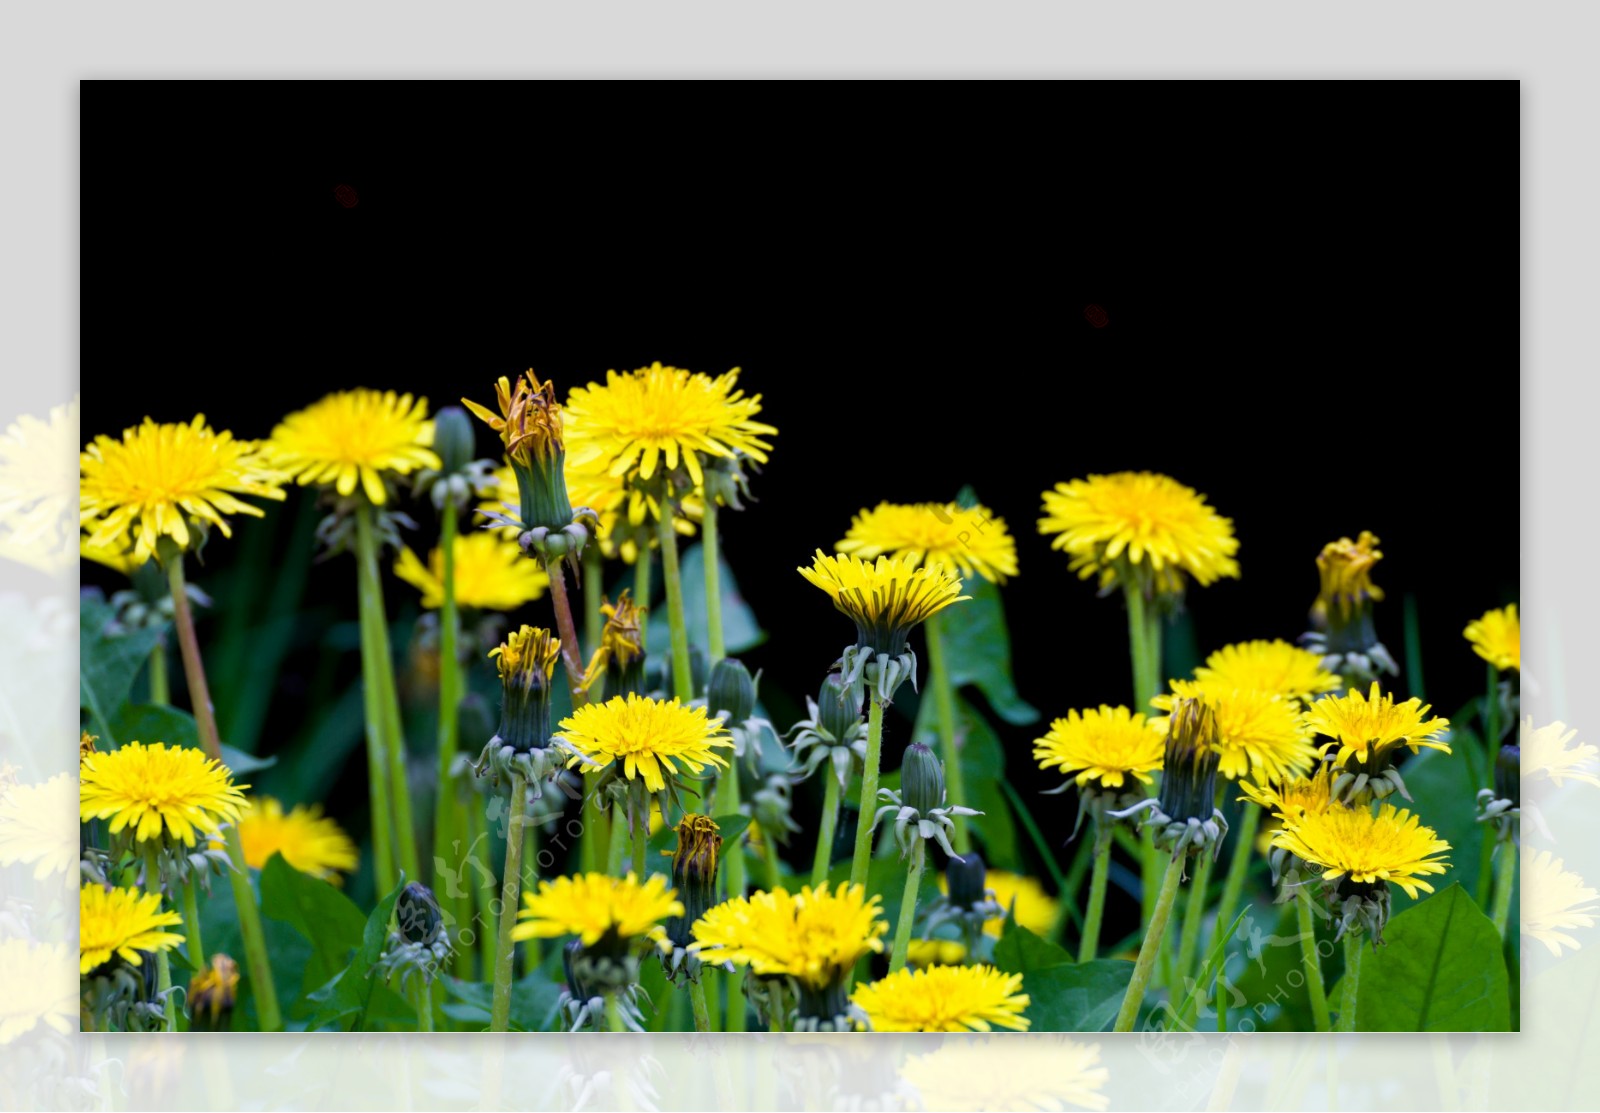 盛开的黄色菊花图片